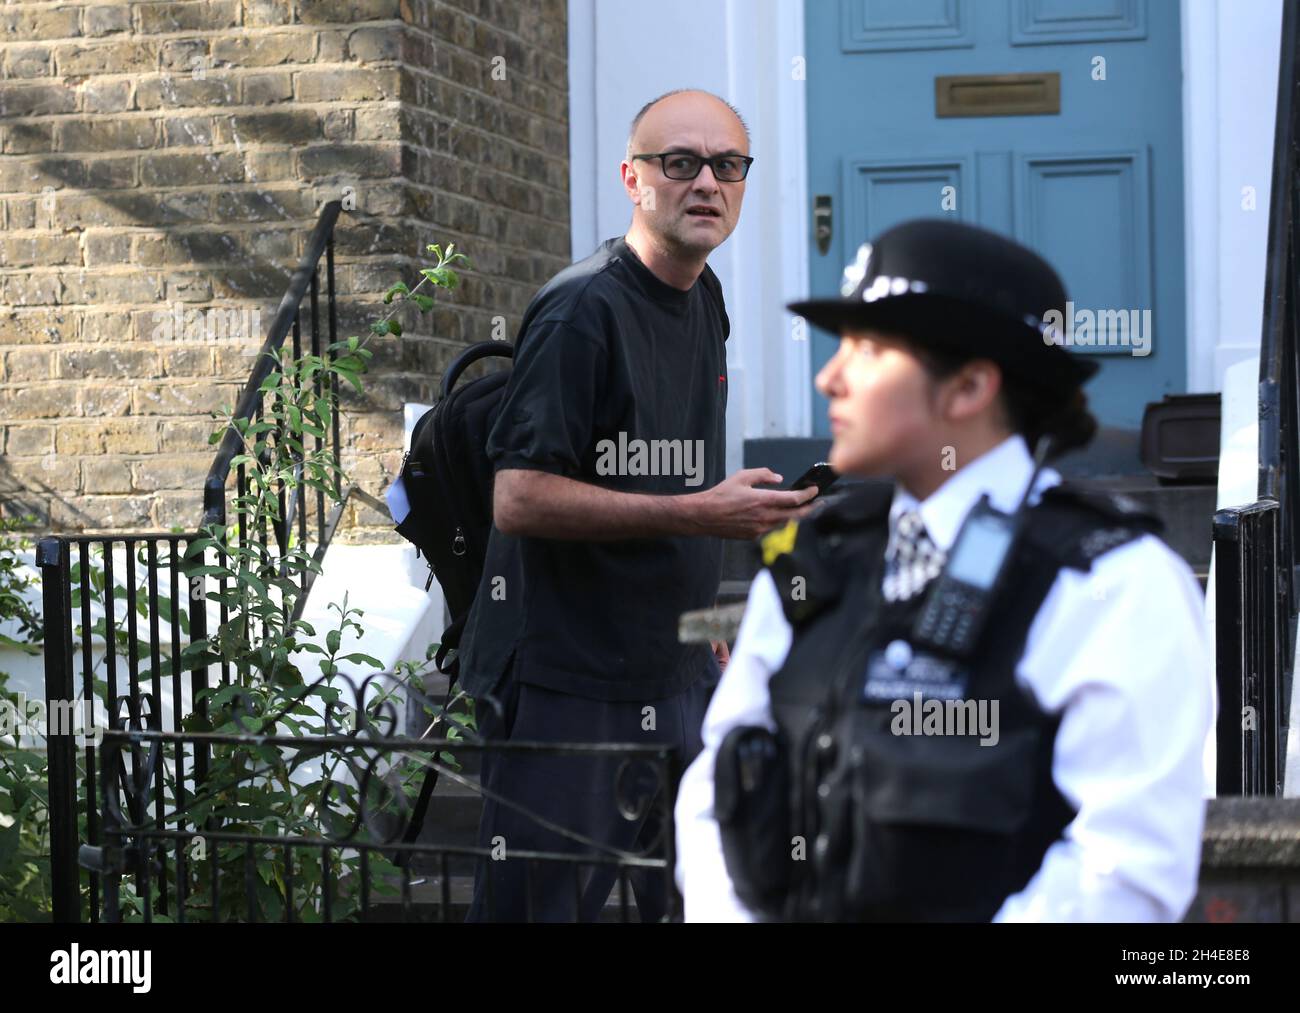 Dominic Cummings, der oberste Berater von Premierminister Boris Johnson, verlässt sein Haus im Norden Londons, während der Streit über seine Reise nach Durham während der Sperre weitergeht. Bilddatum: Donnerstag, 28. Mai 2020. Stockfoto